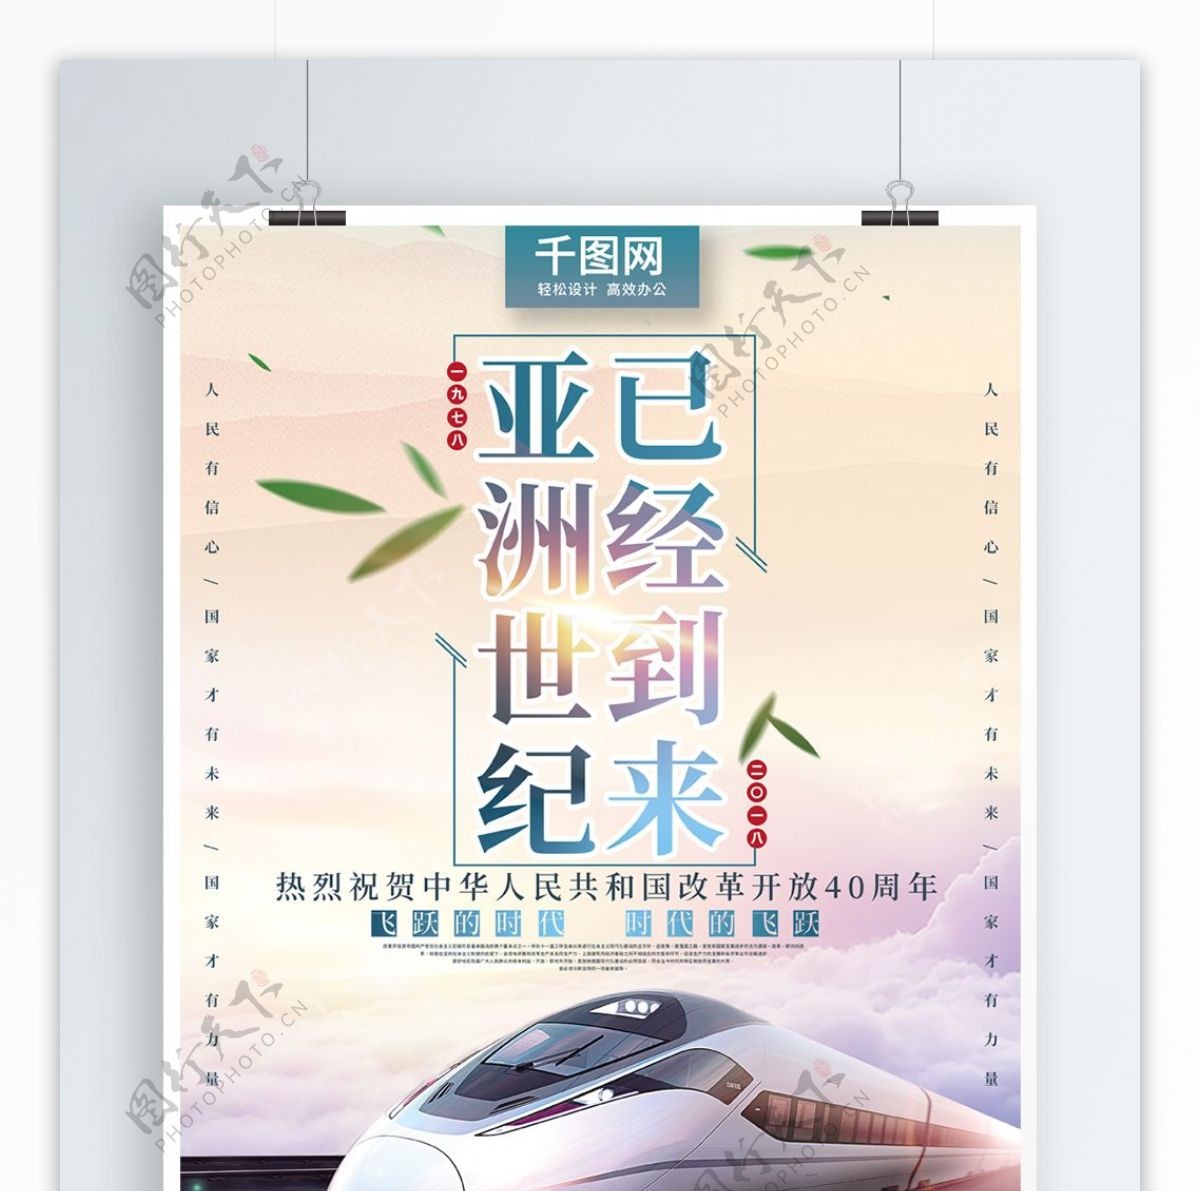 大气列车云彩改革开放四十周年党建宣传海报